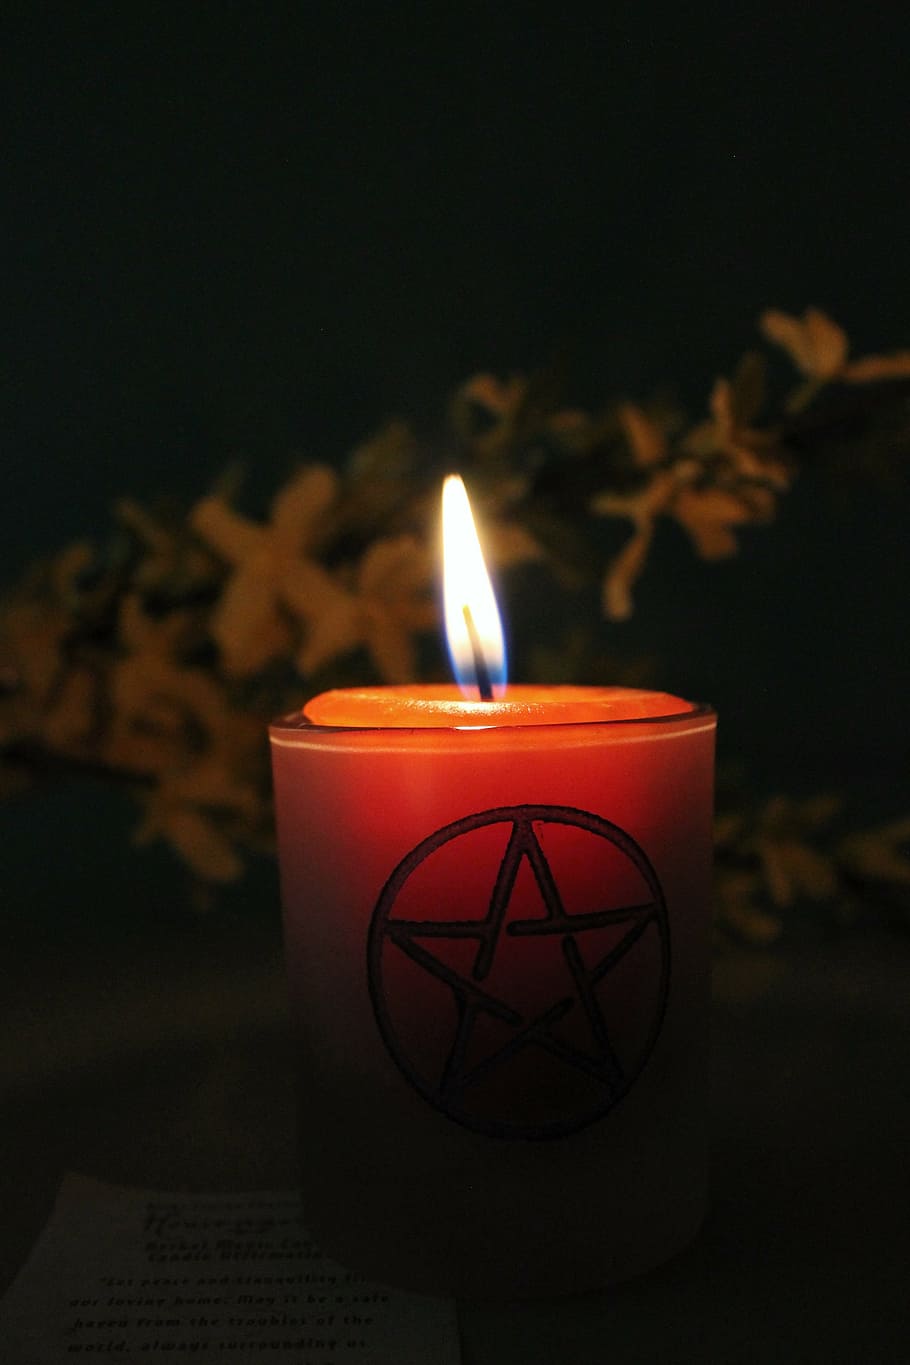 lilin pilar menyala, lilin sihir, lilin magick, wicca, pagan, sihir, api, okultisme, kuno, esoteris